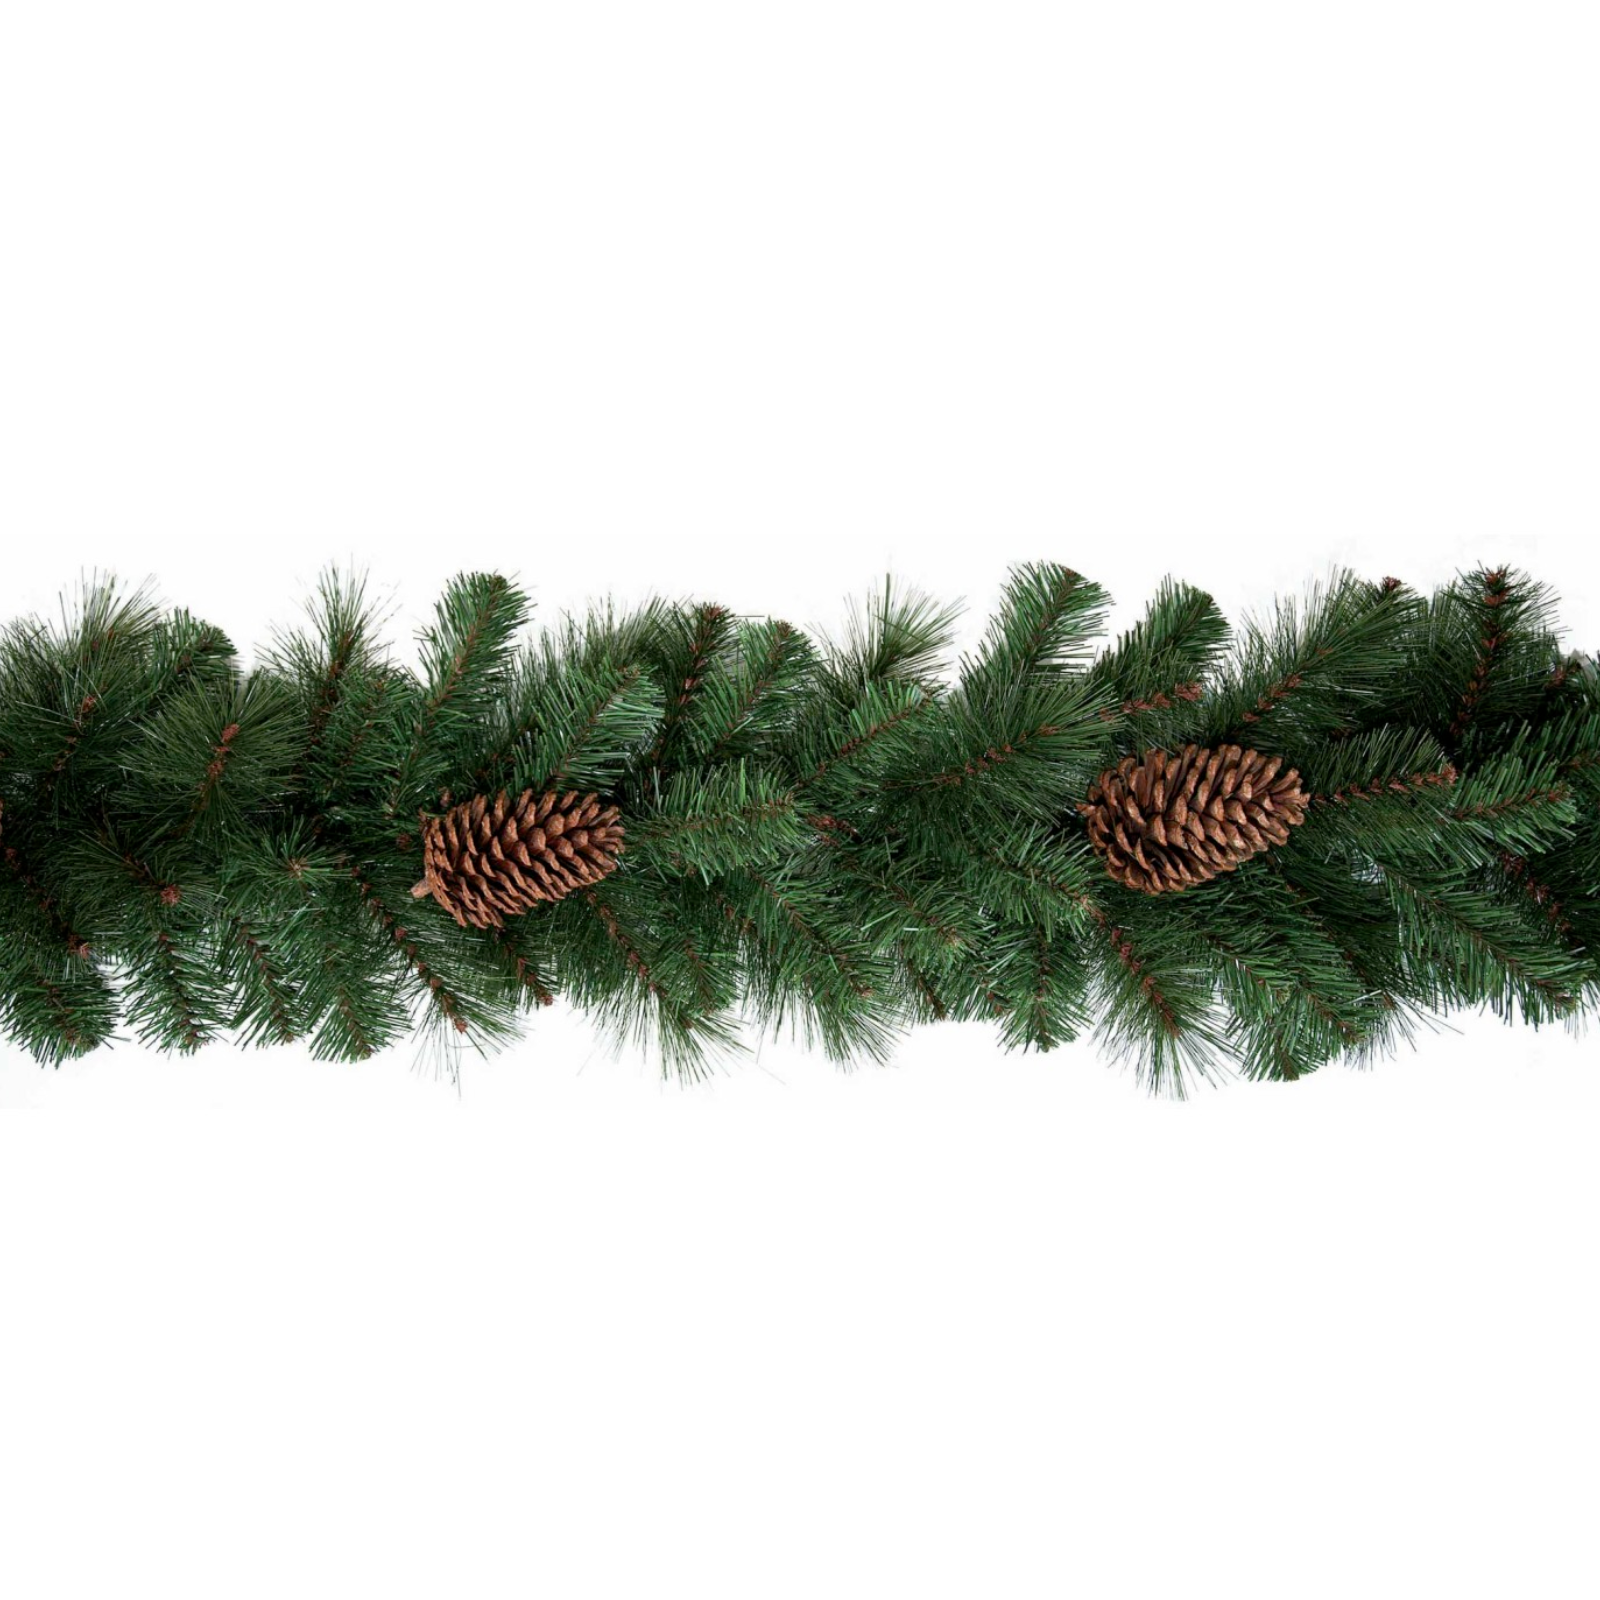 Ghirlanda natalizia festone fuori porta "Olivetta" verde artificiale con pigne 270 cm